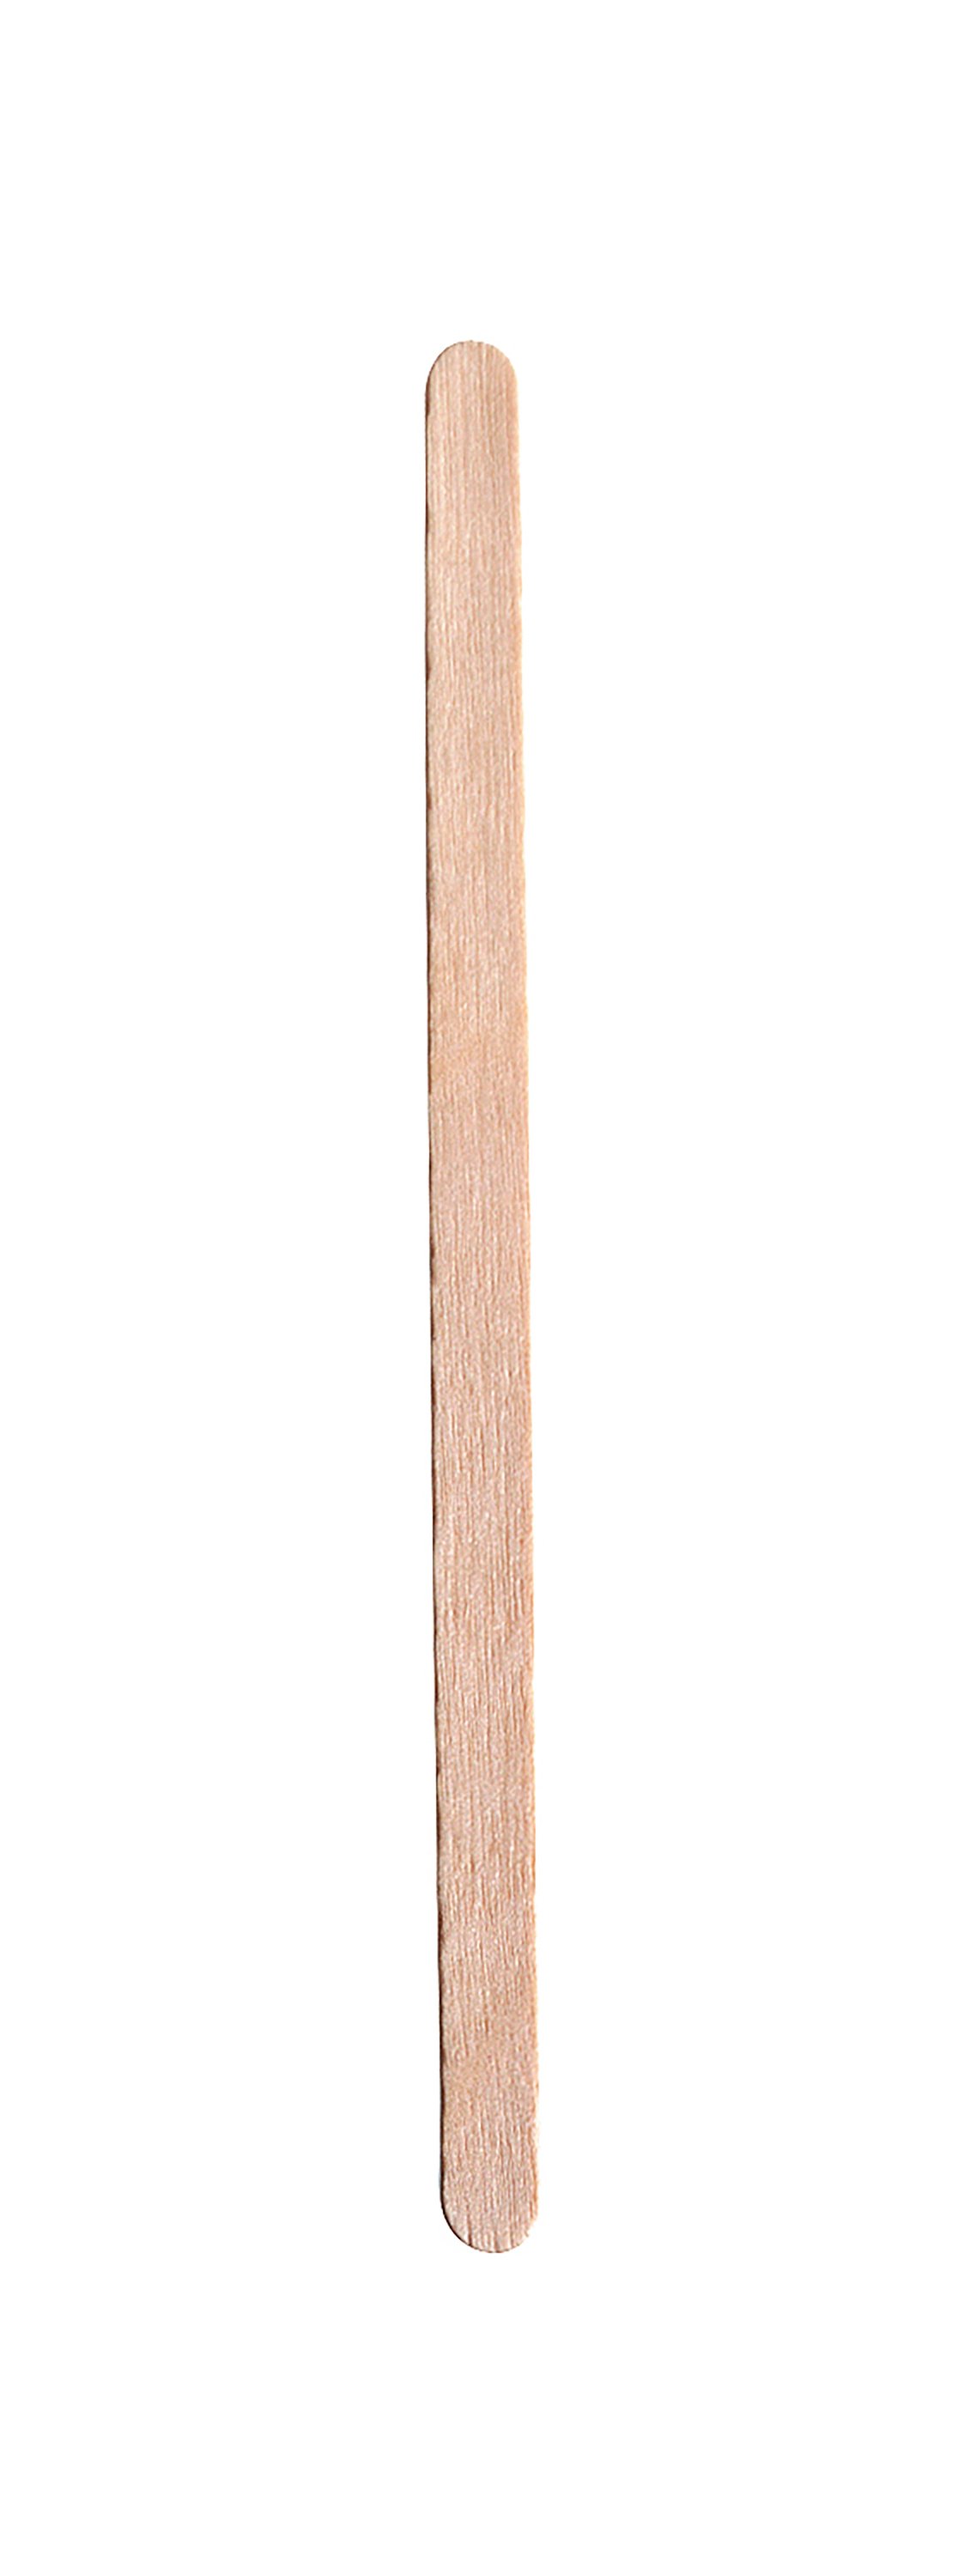 Engångsbestick Rörpinne trä 110mm 61010153